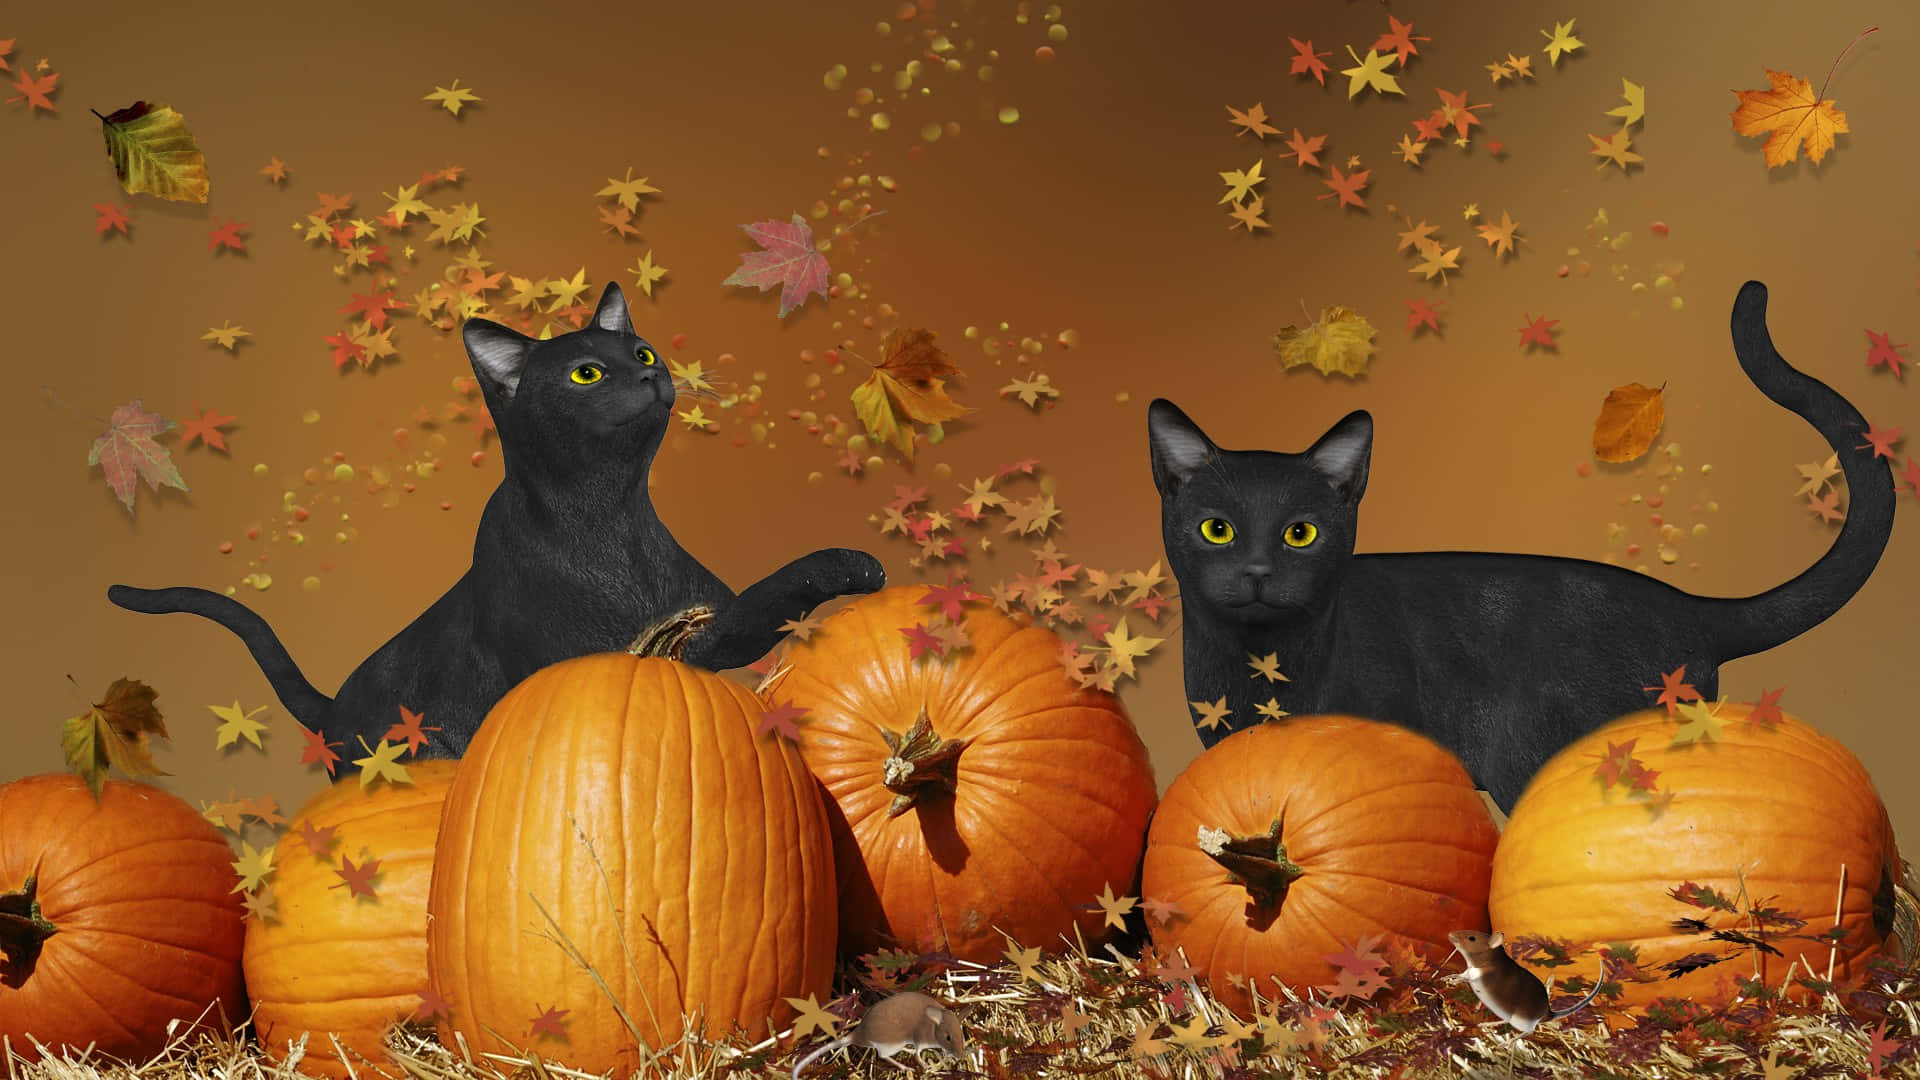 Halloweenniedliche Schwarze Katzen Spielen Auf Einem Bild Mit Herbstblättern.